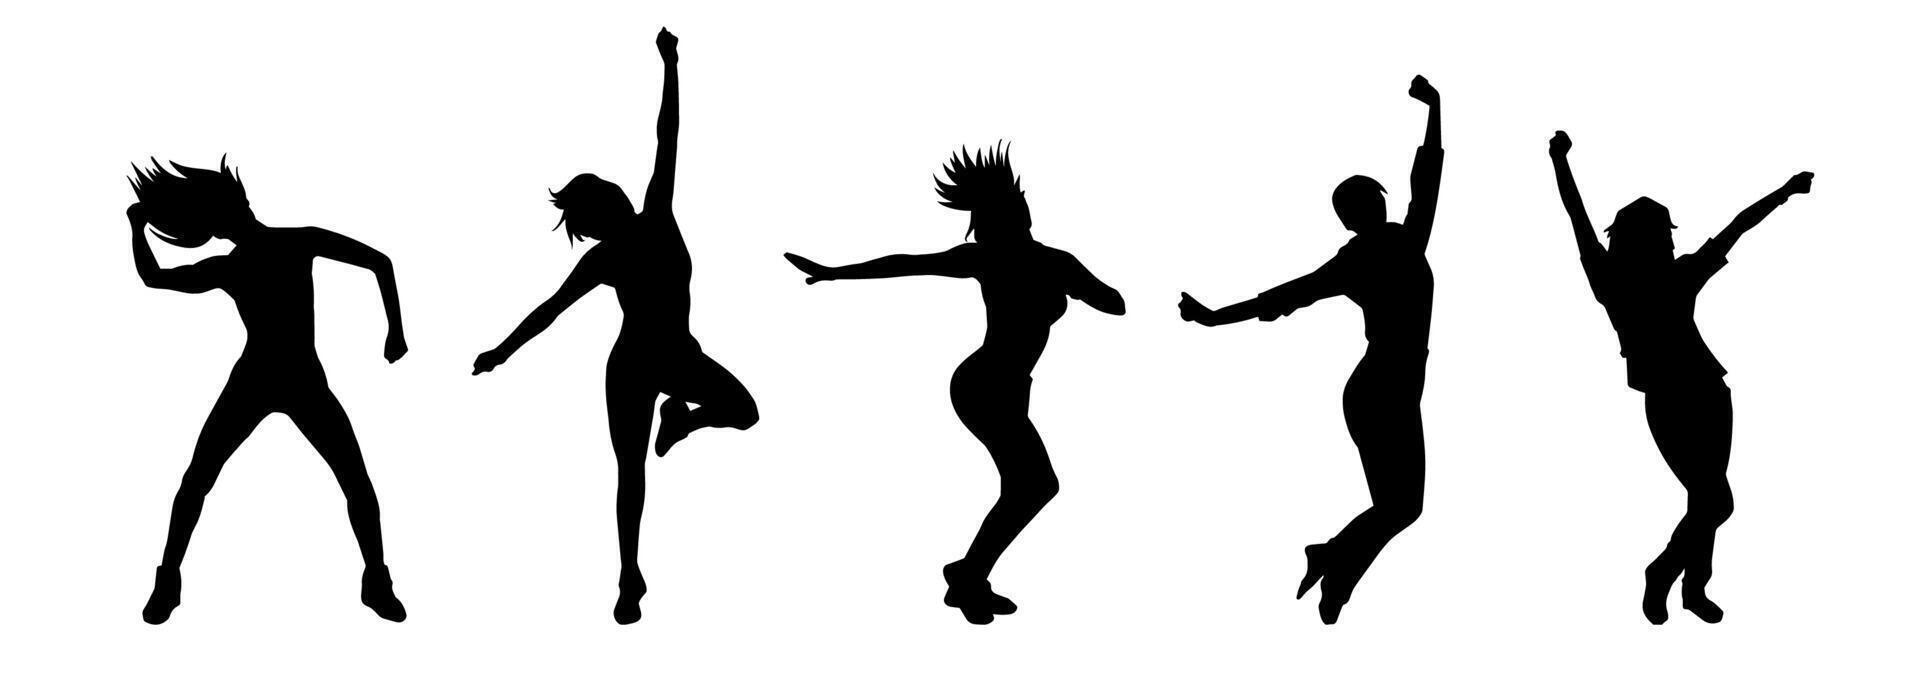 Silhouette Sammlung von schlank weiblich Tänzer im Aktion Pose vektor